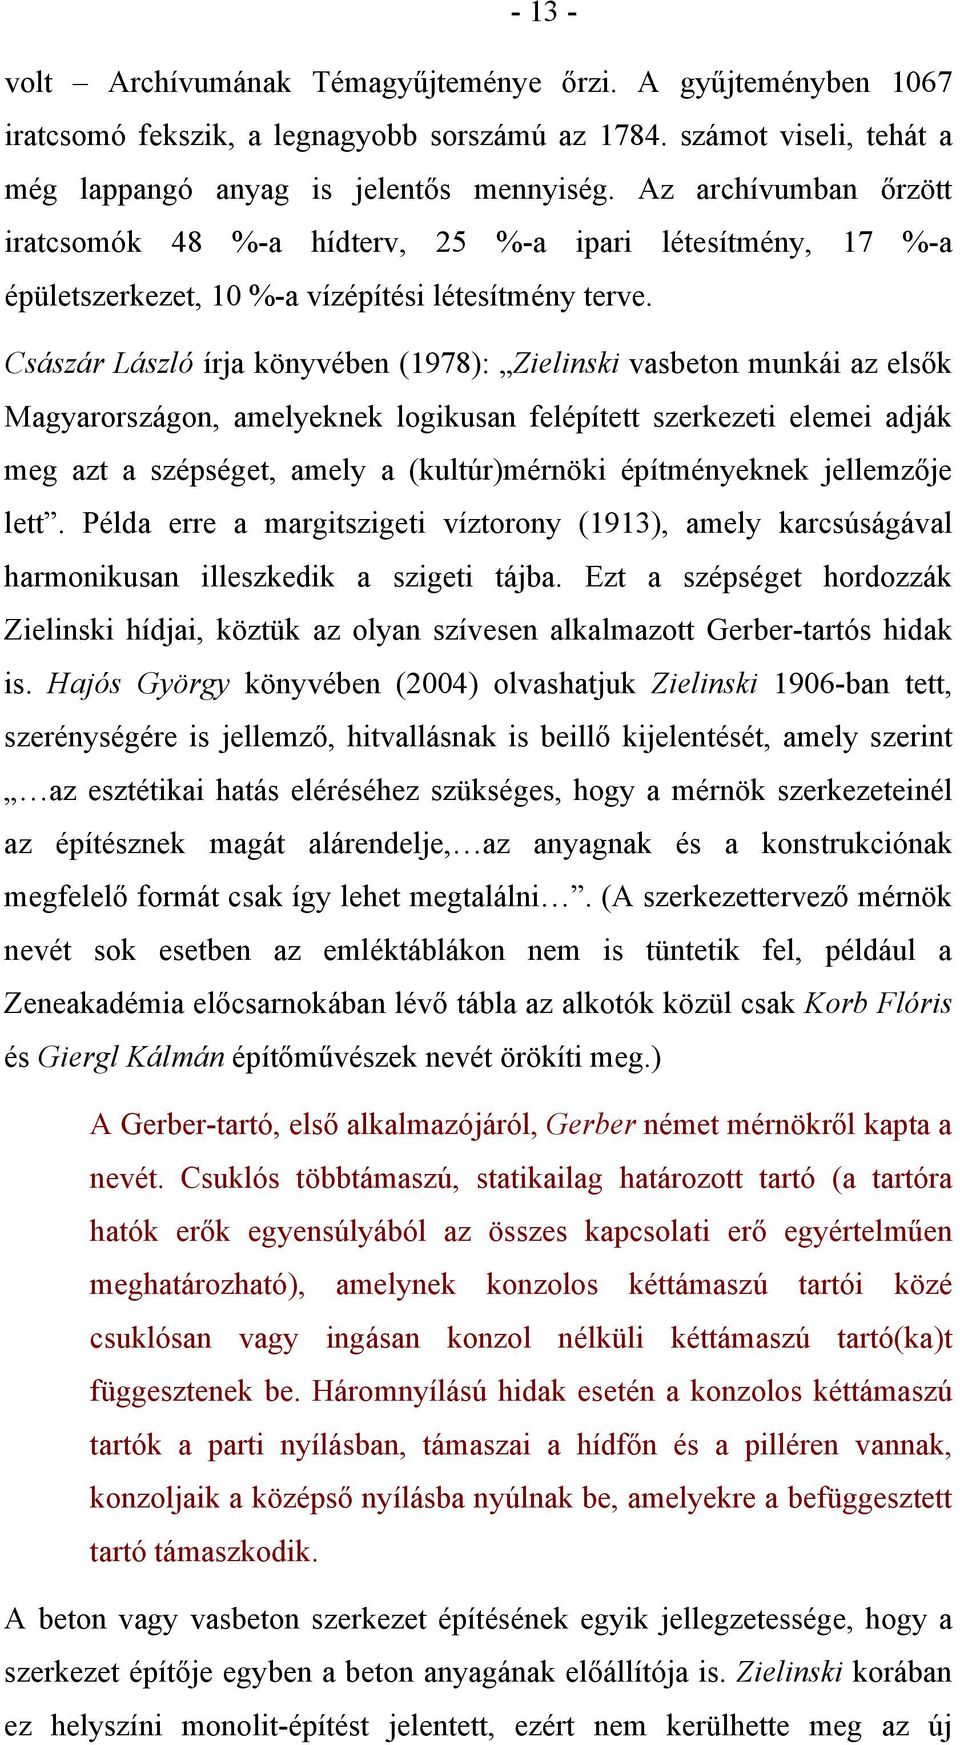 Császár László írja könyvében (1978): Zielinski vasbeton munkái az elsők Magyarországon, amelyeknek logikusan felépített szerkezeti elemei adják meg azt a szépséget, amely a (kultúr)mérnöki